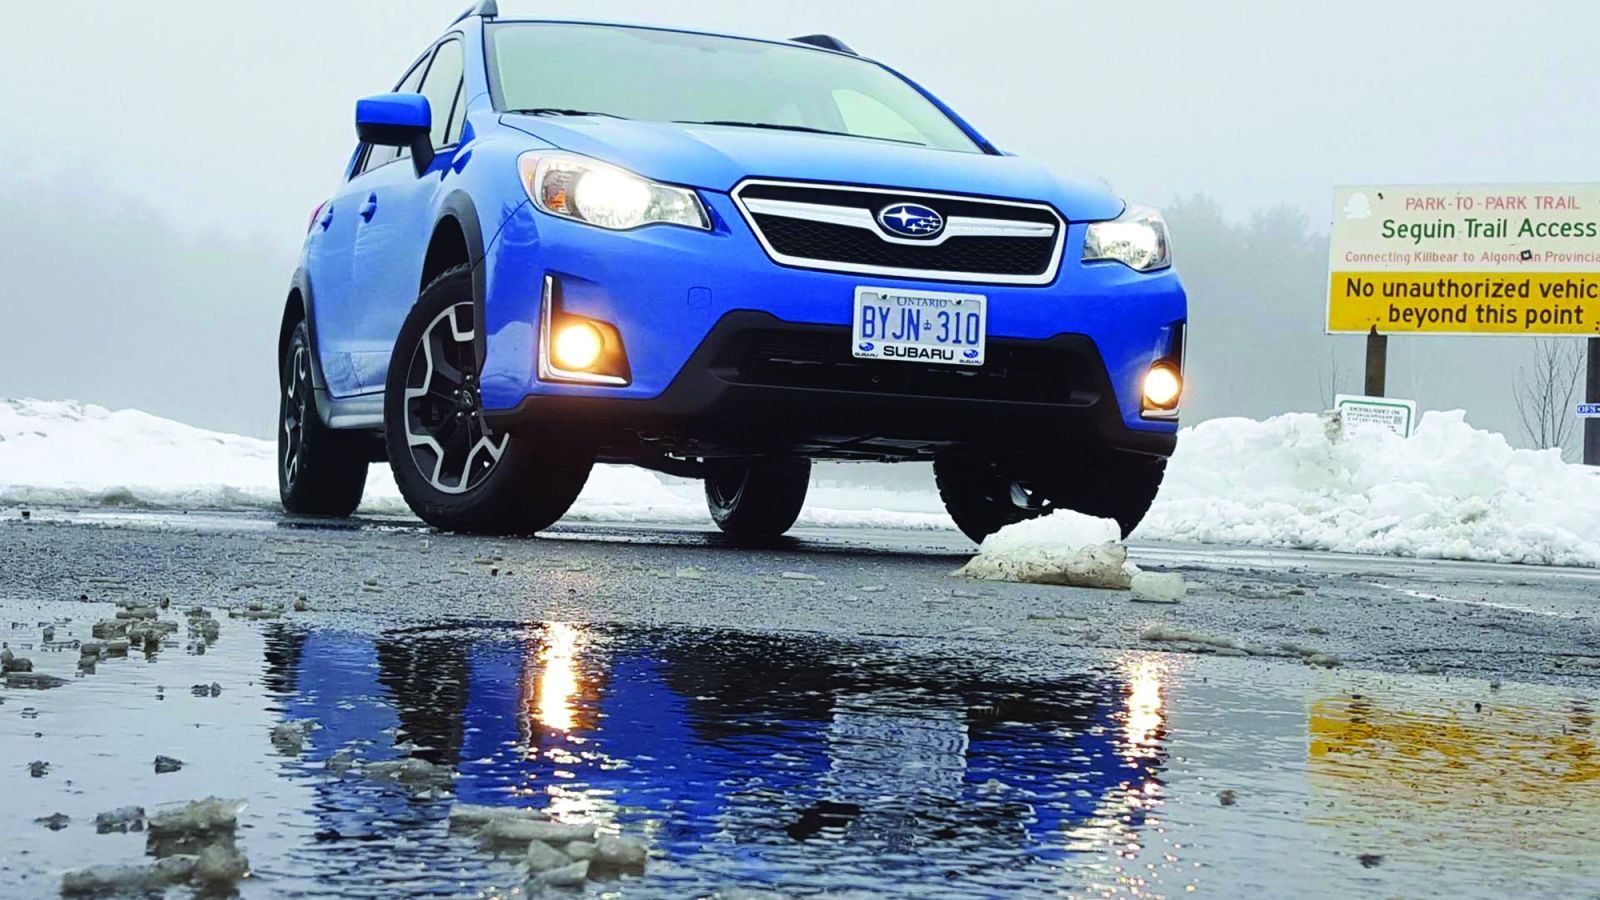  DDI được xem là một chiến dịch thành công của Subaru và nằm trong top được tương tác nhiều nhất trong mùa mưa bão năm 2015 – 2016. Ảnh: Autotrader